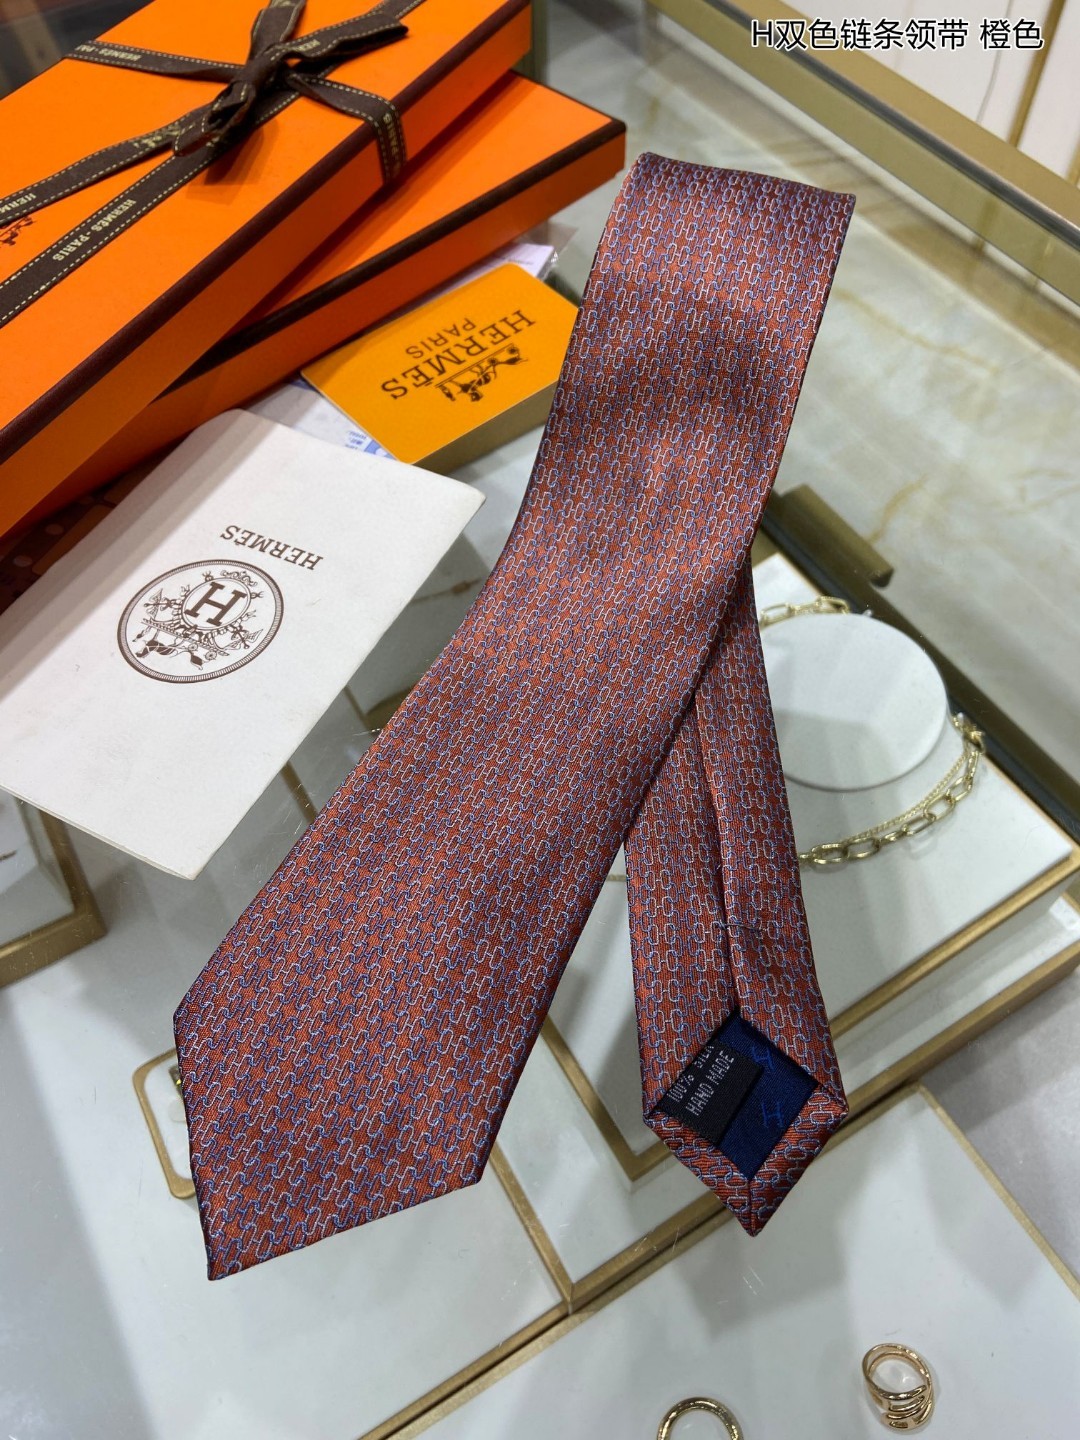 特价男士新款领带系列H双色链条领带稀有H家每年都有一千条不同印花的领带面世从最初的多以几何图案表现骑术活